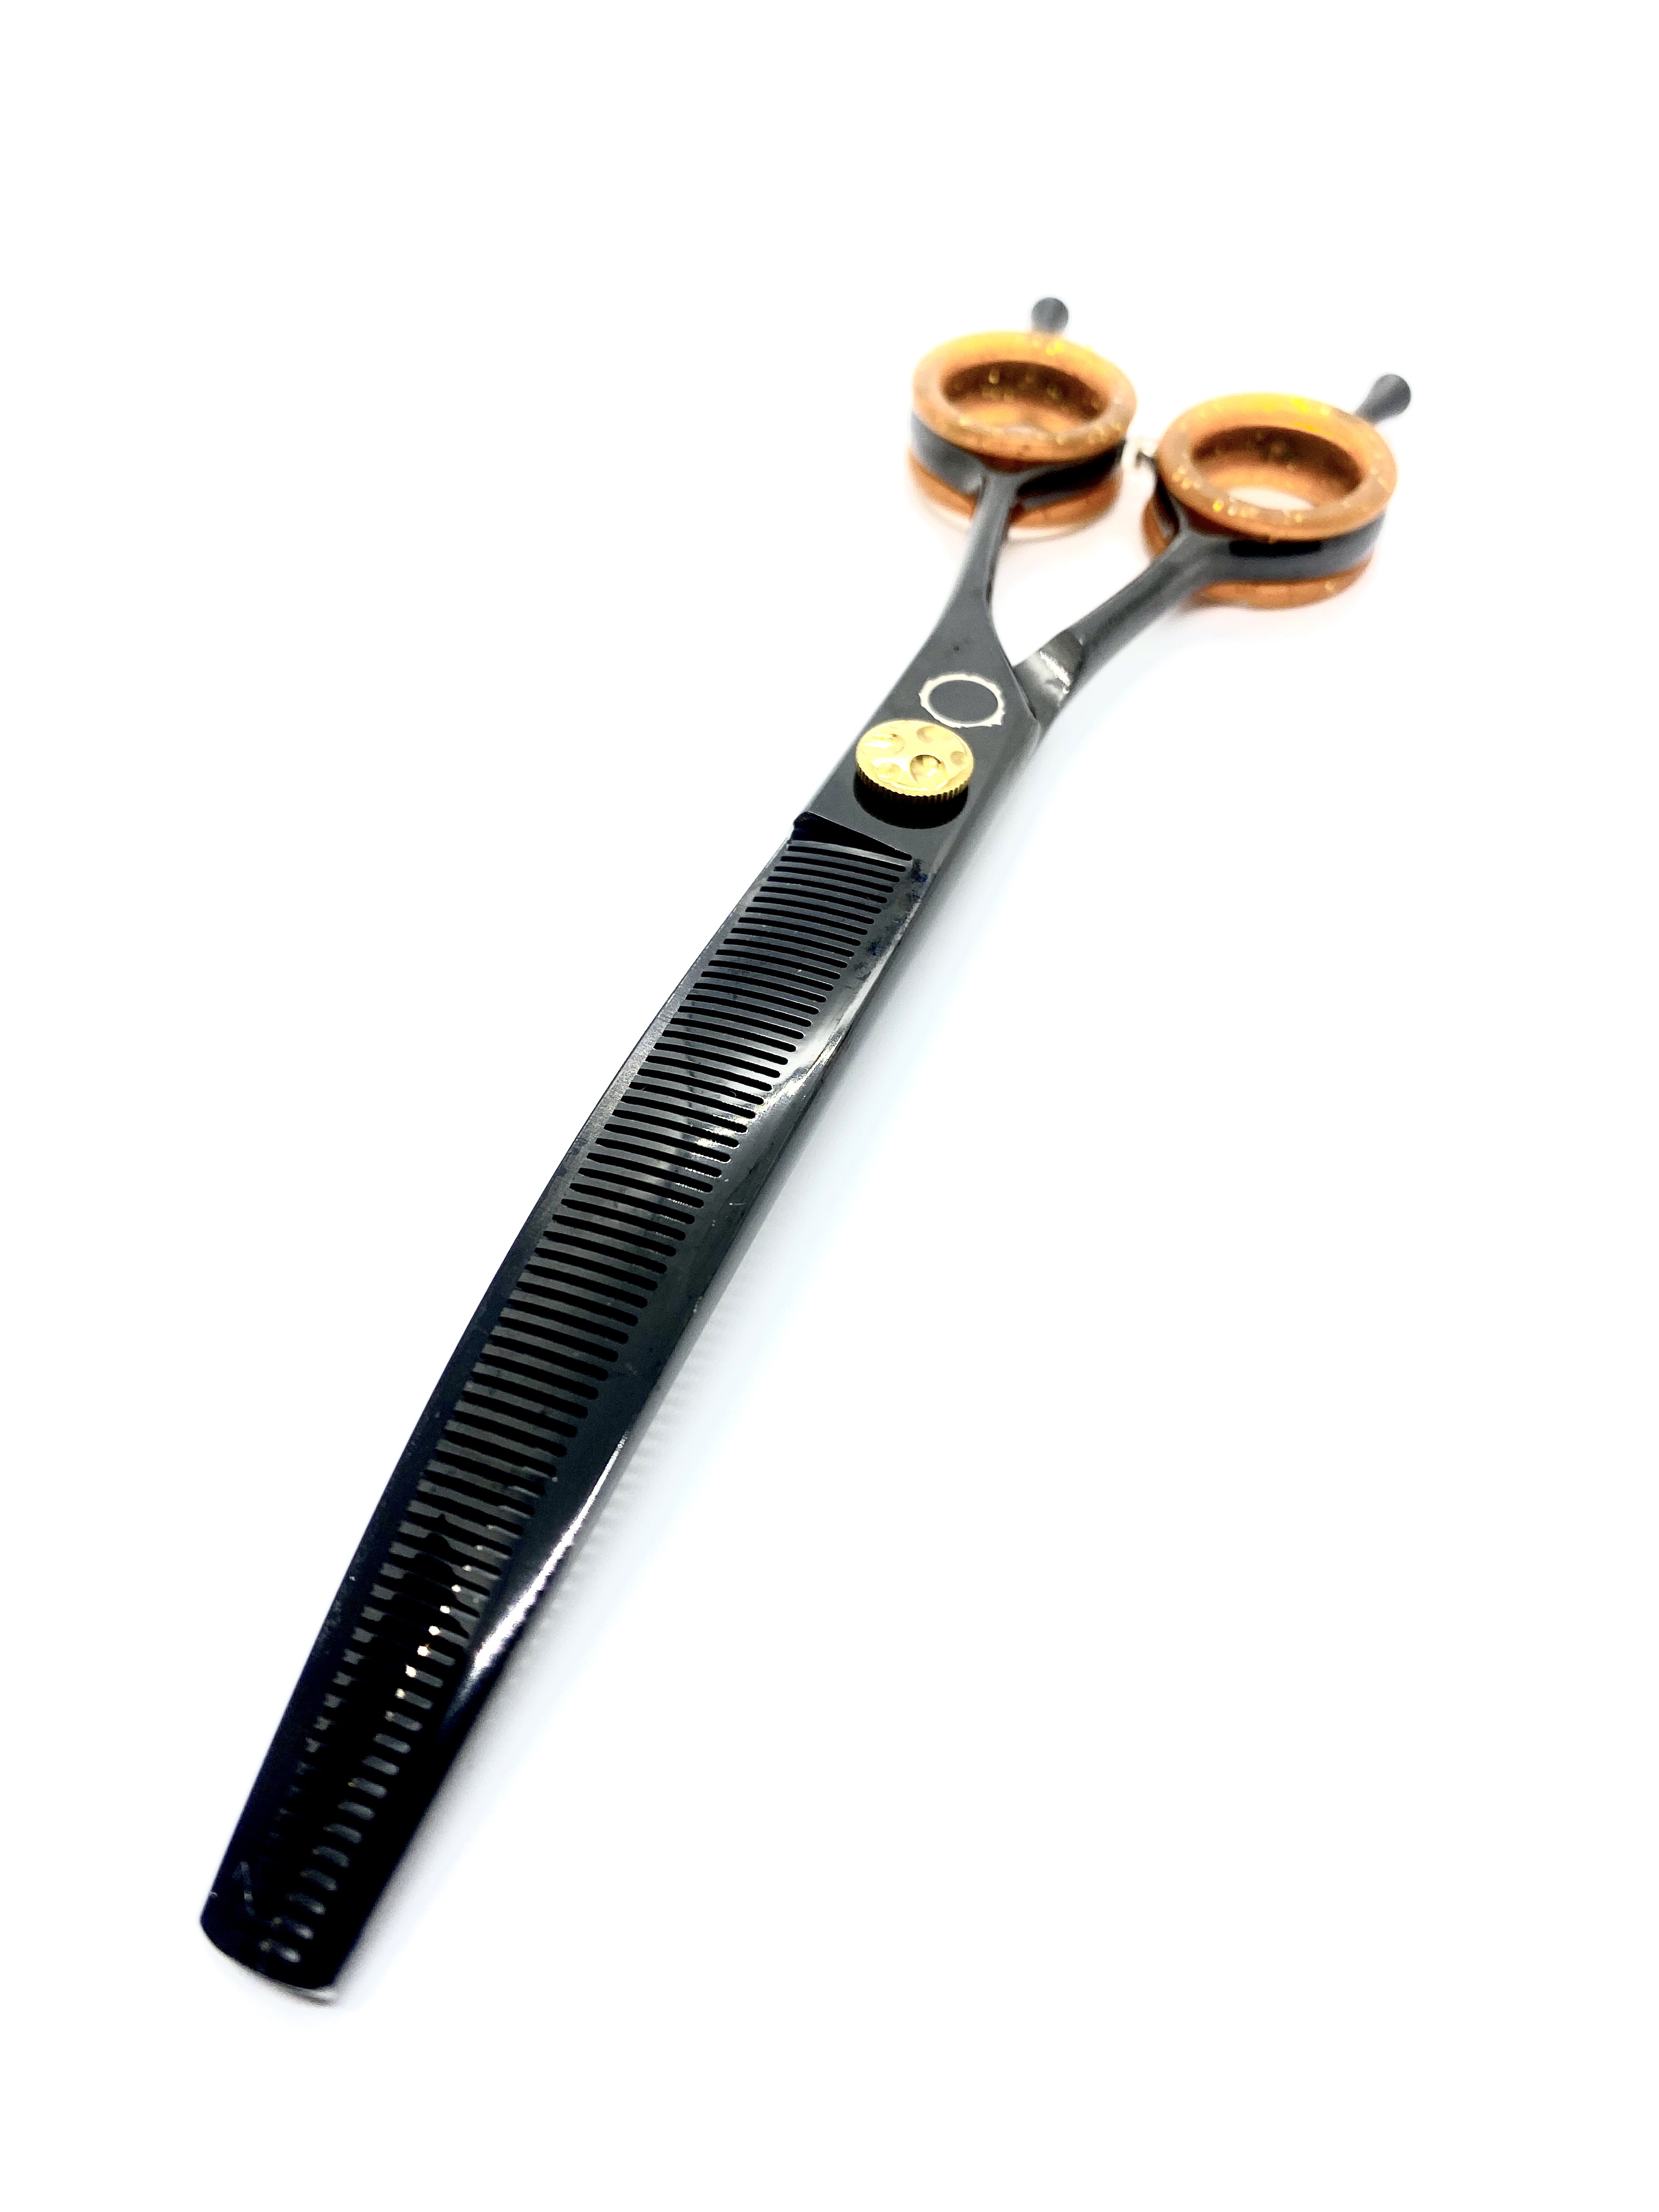 Danco Lunar-I Serrated Braid Scissors - 3in